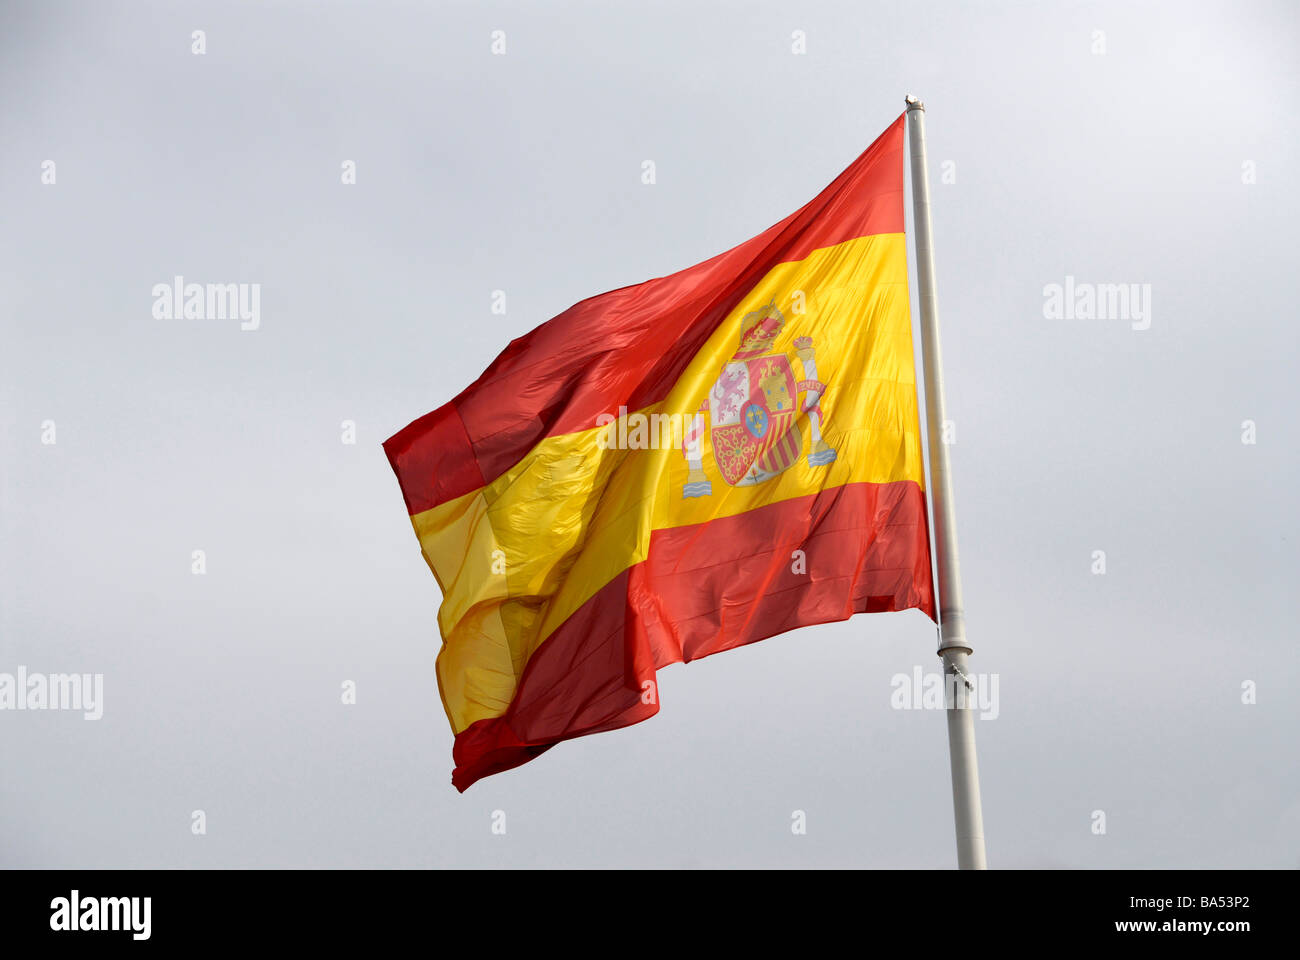 Spanish flag in sky Stock Photo